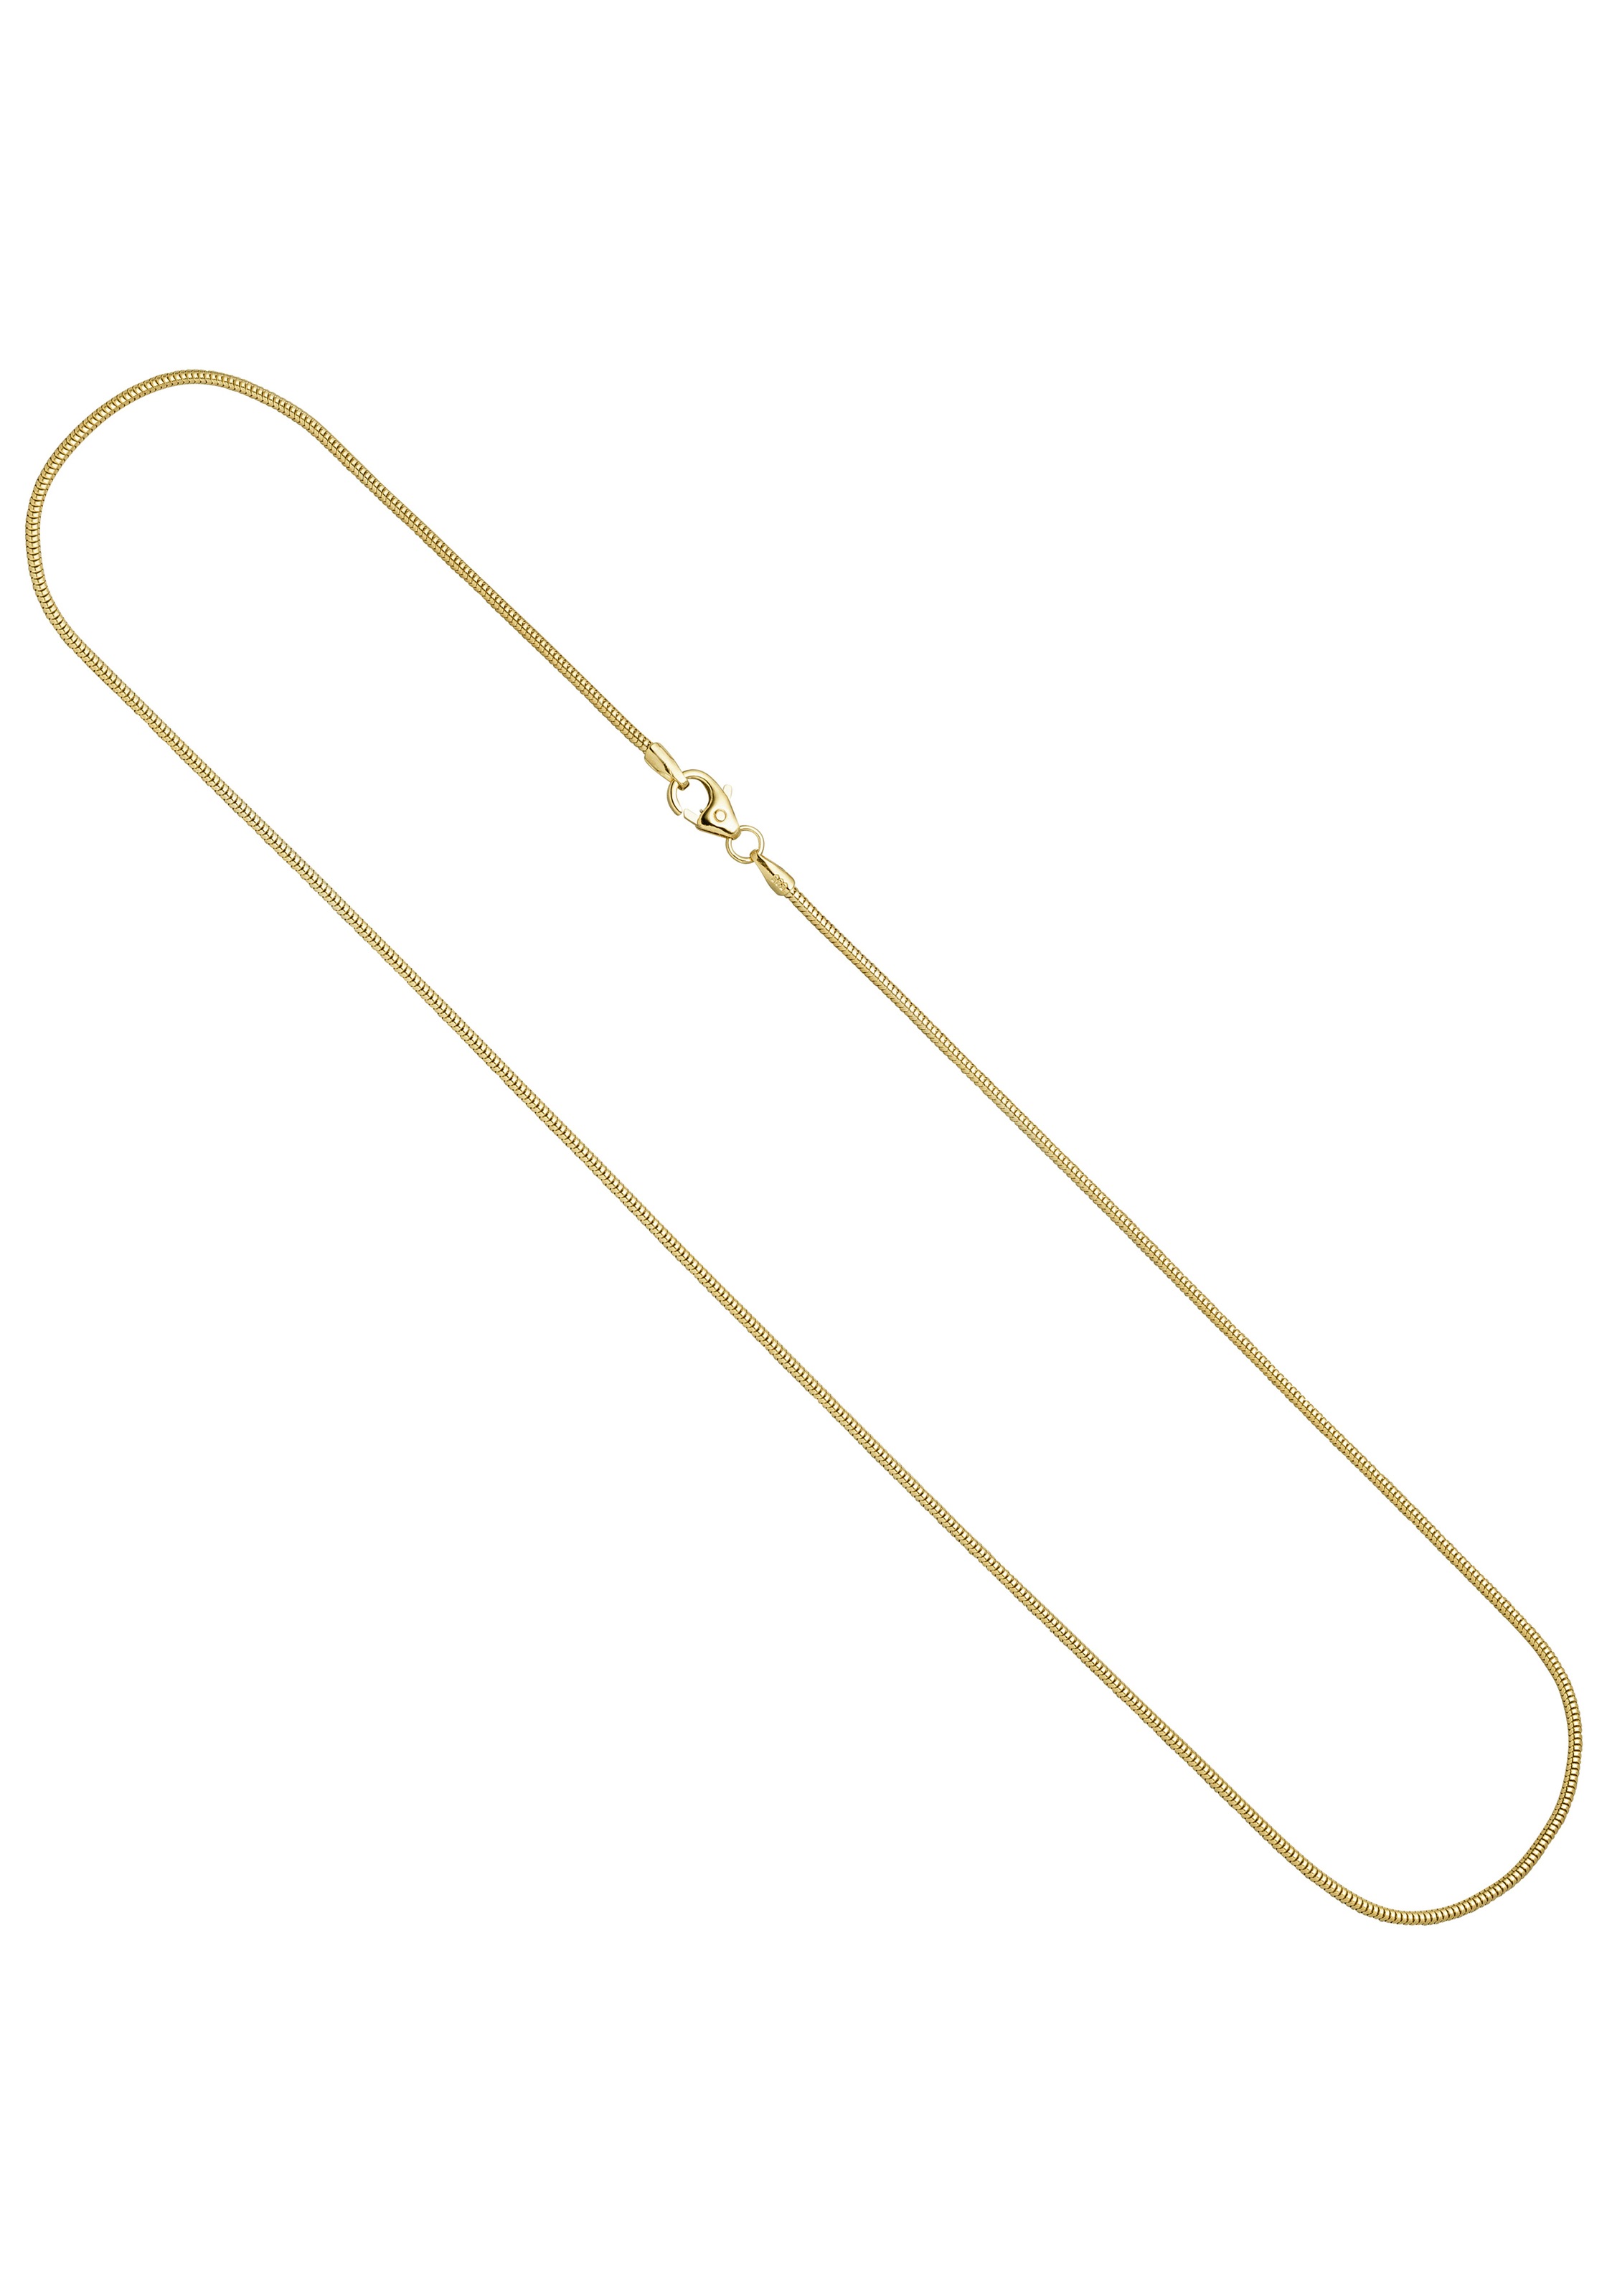 JOBO Goldkette, Schlangenkette 585 Gold 50 cm 1,4 mm